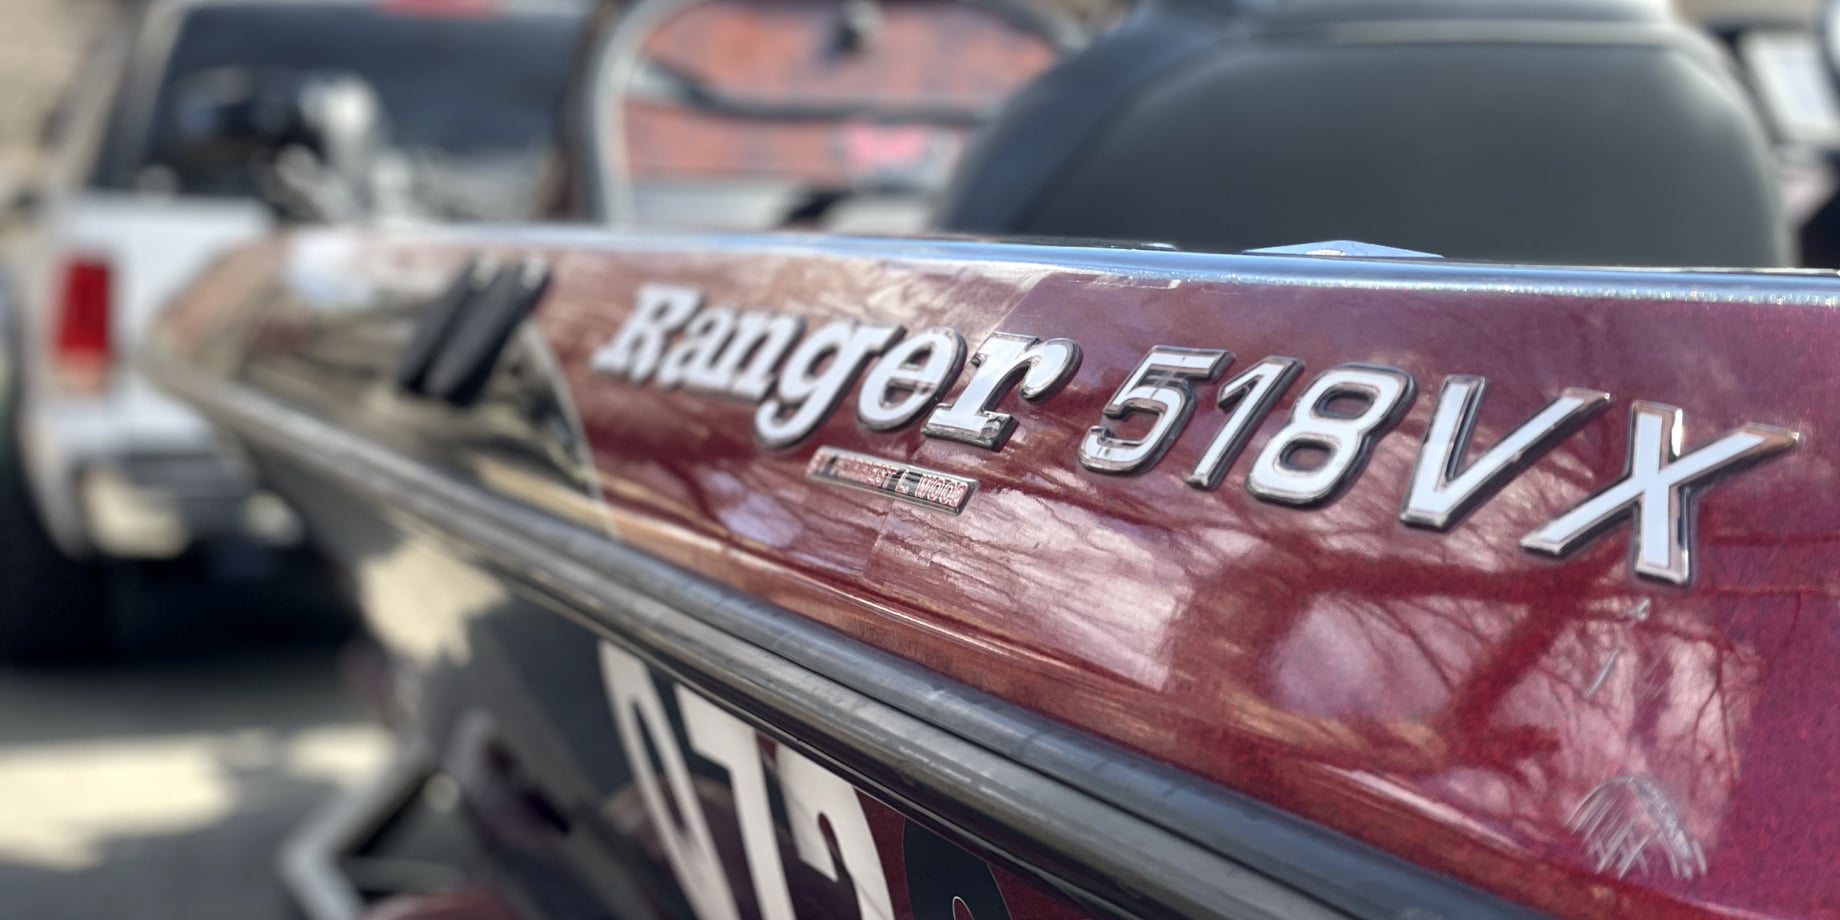 Ranger518VX 200ps